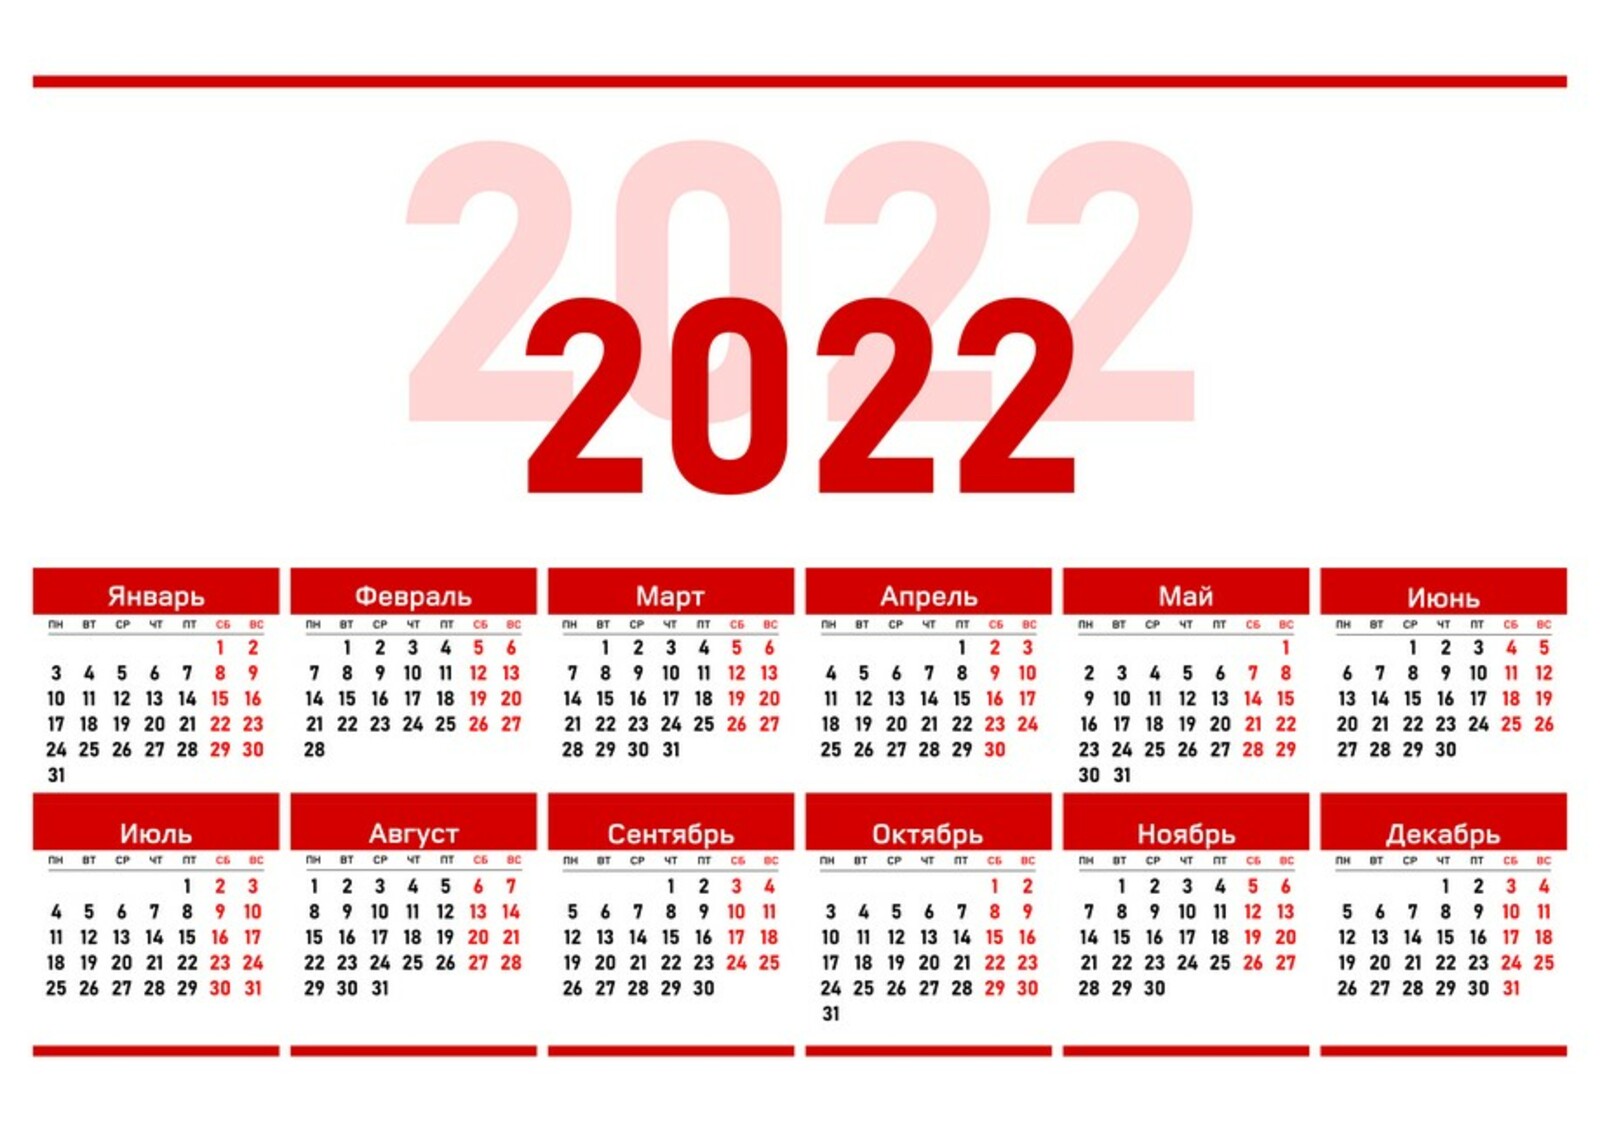 23 апреля рабочий. Производственный календарь 2022. Календарь на 2022 год ЛНР. Официальные праздники 2022 года в России. Выходные дни в 2022 году в России.